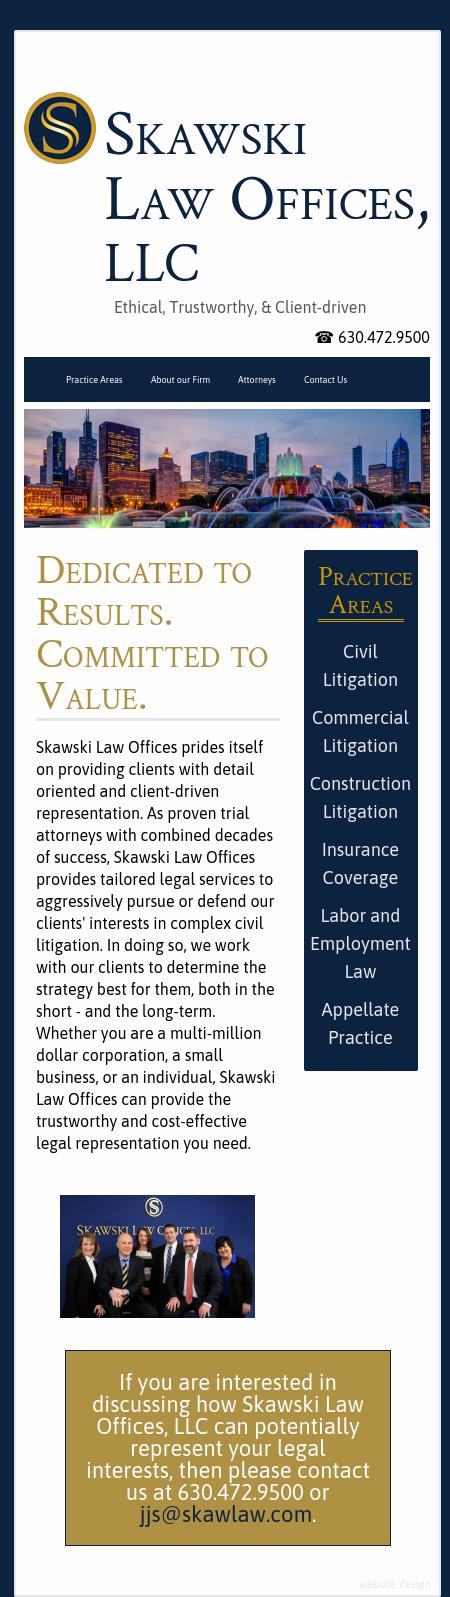 Skawski Law Offices, LLC - Oak Brook IL Lawyers